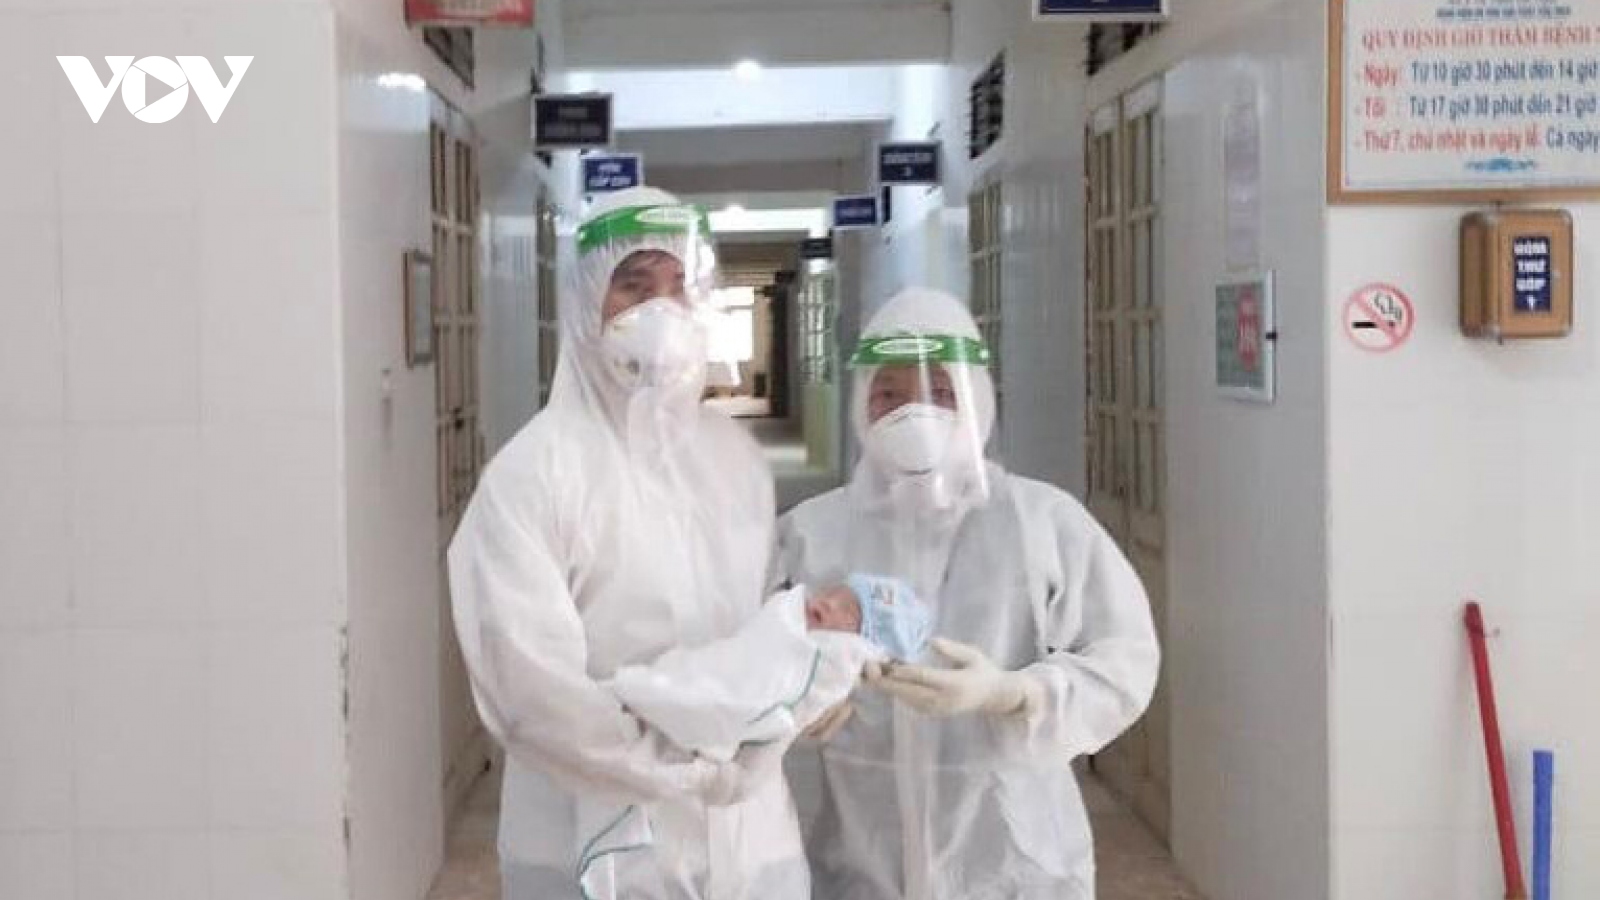 Ba nhân viên y tế ngất xỉu sau khi giúp sản phụ mắc Covid-19 “vượt cạn” 